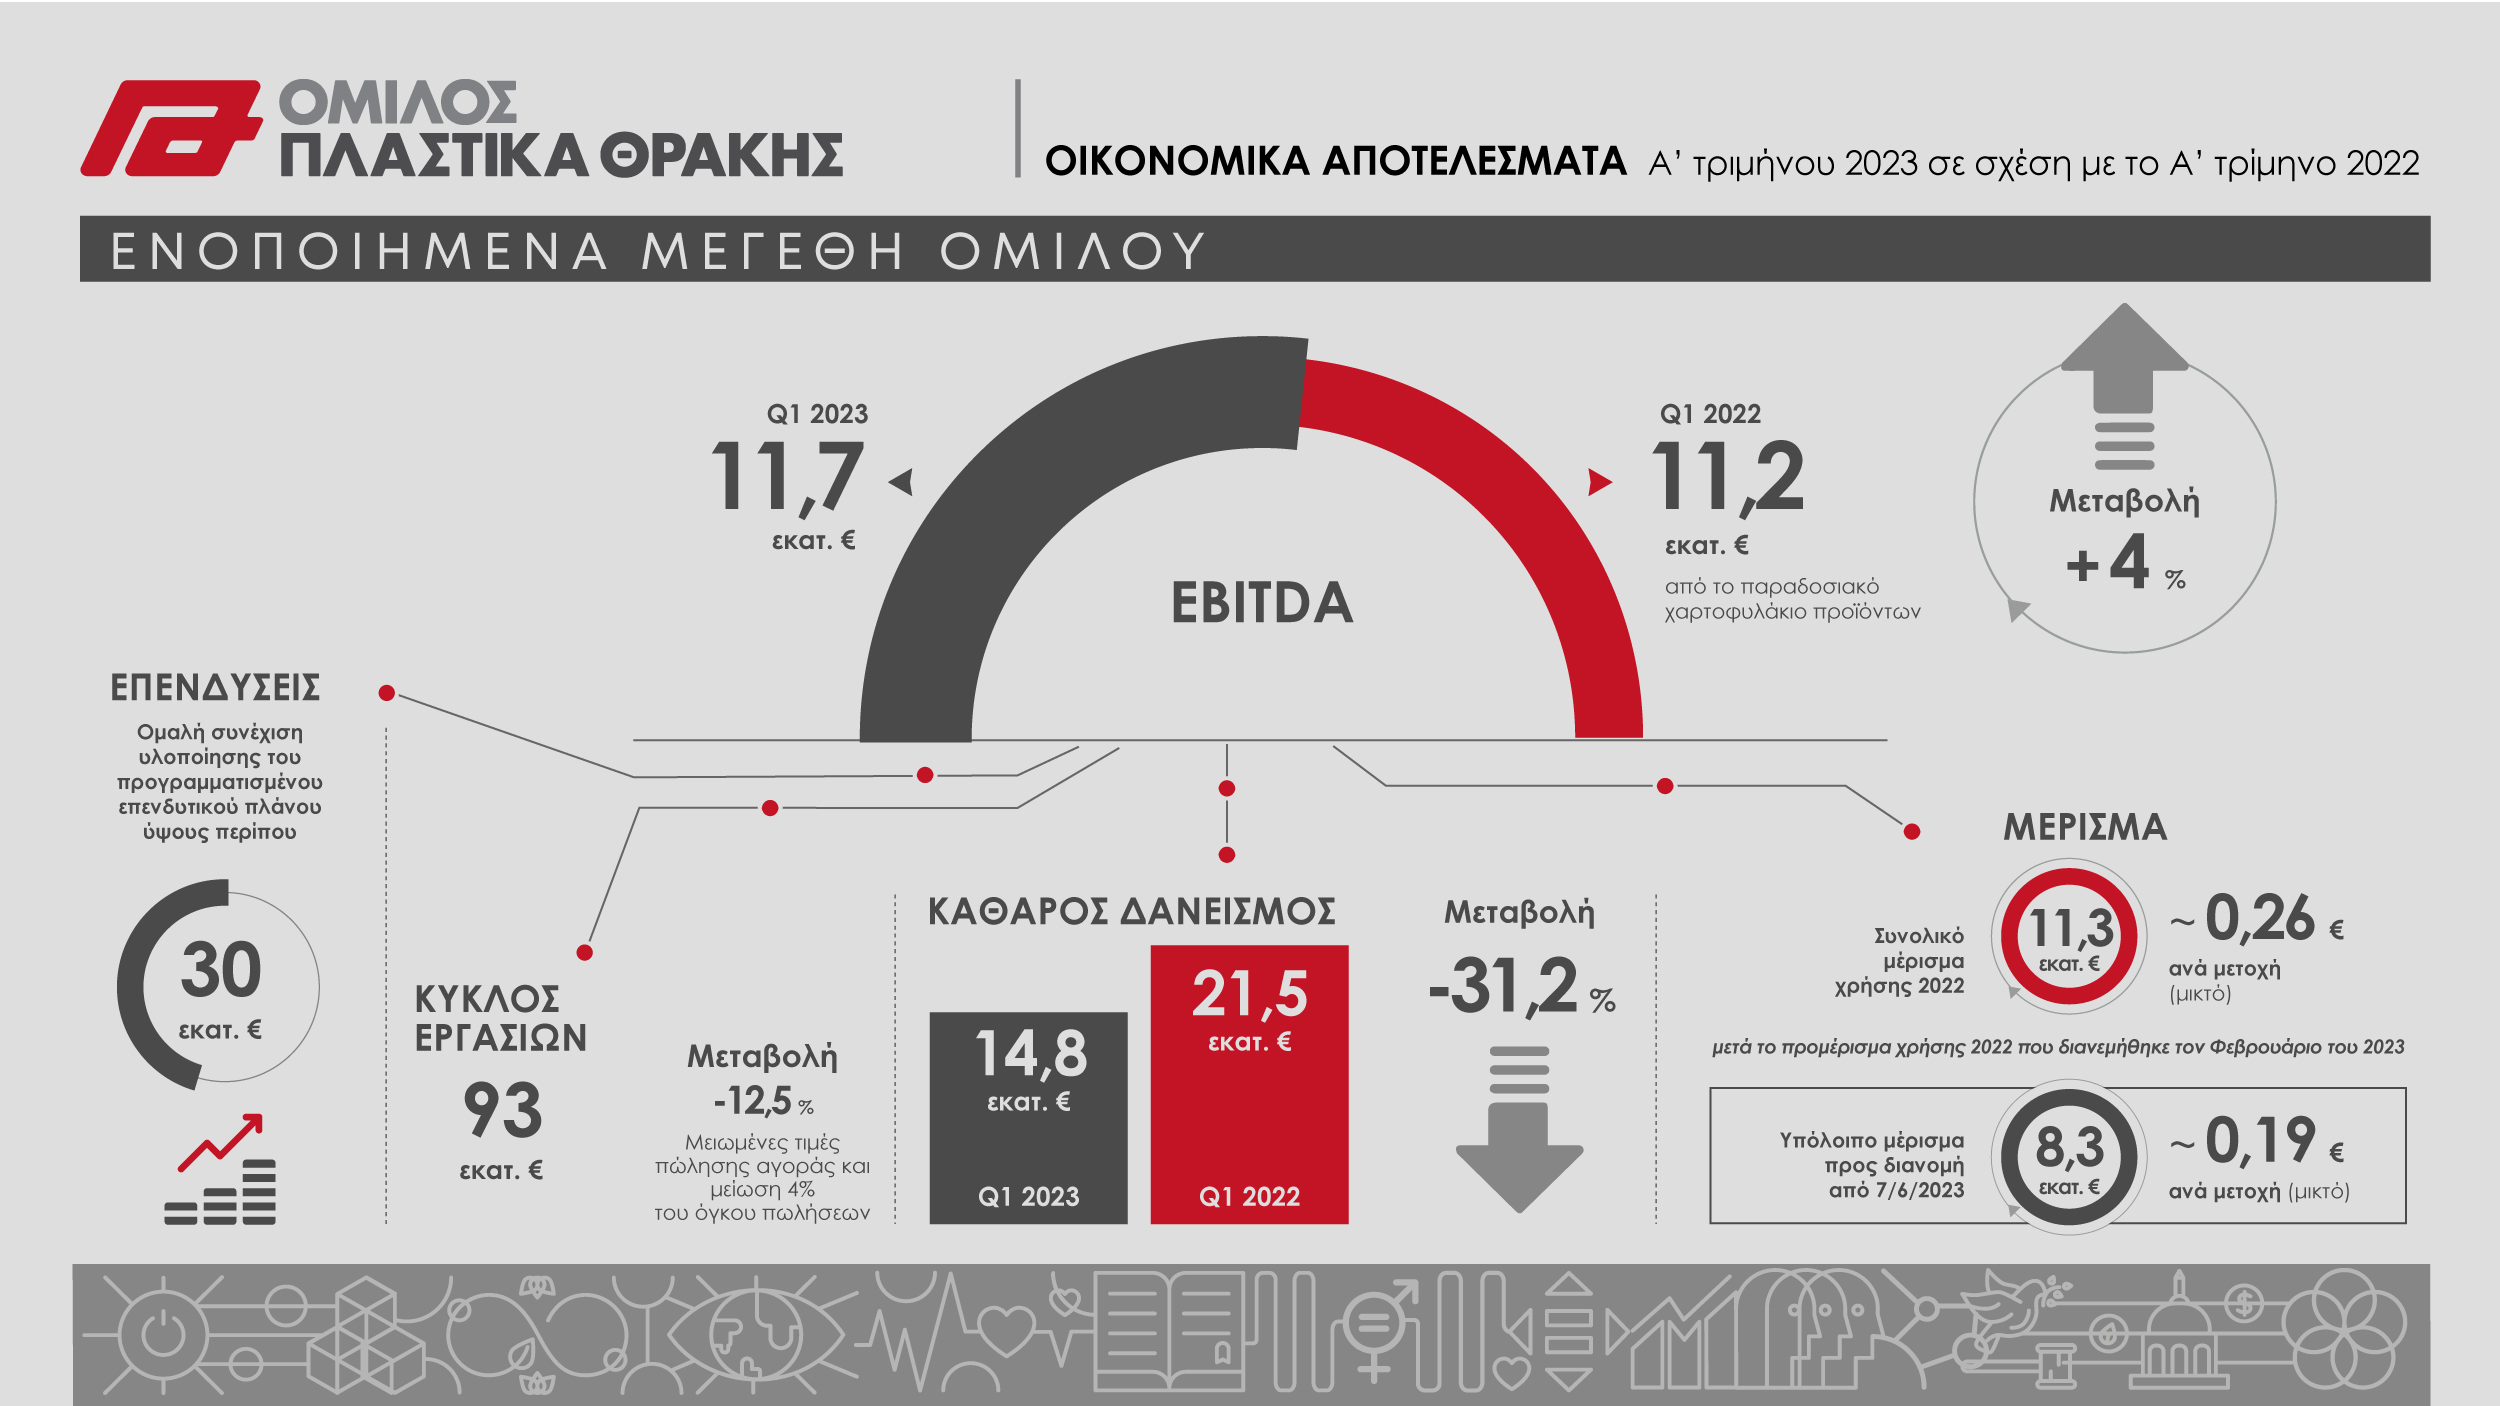 Infographic Πλαστικά Θράκης